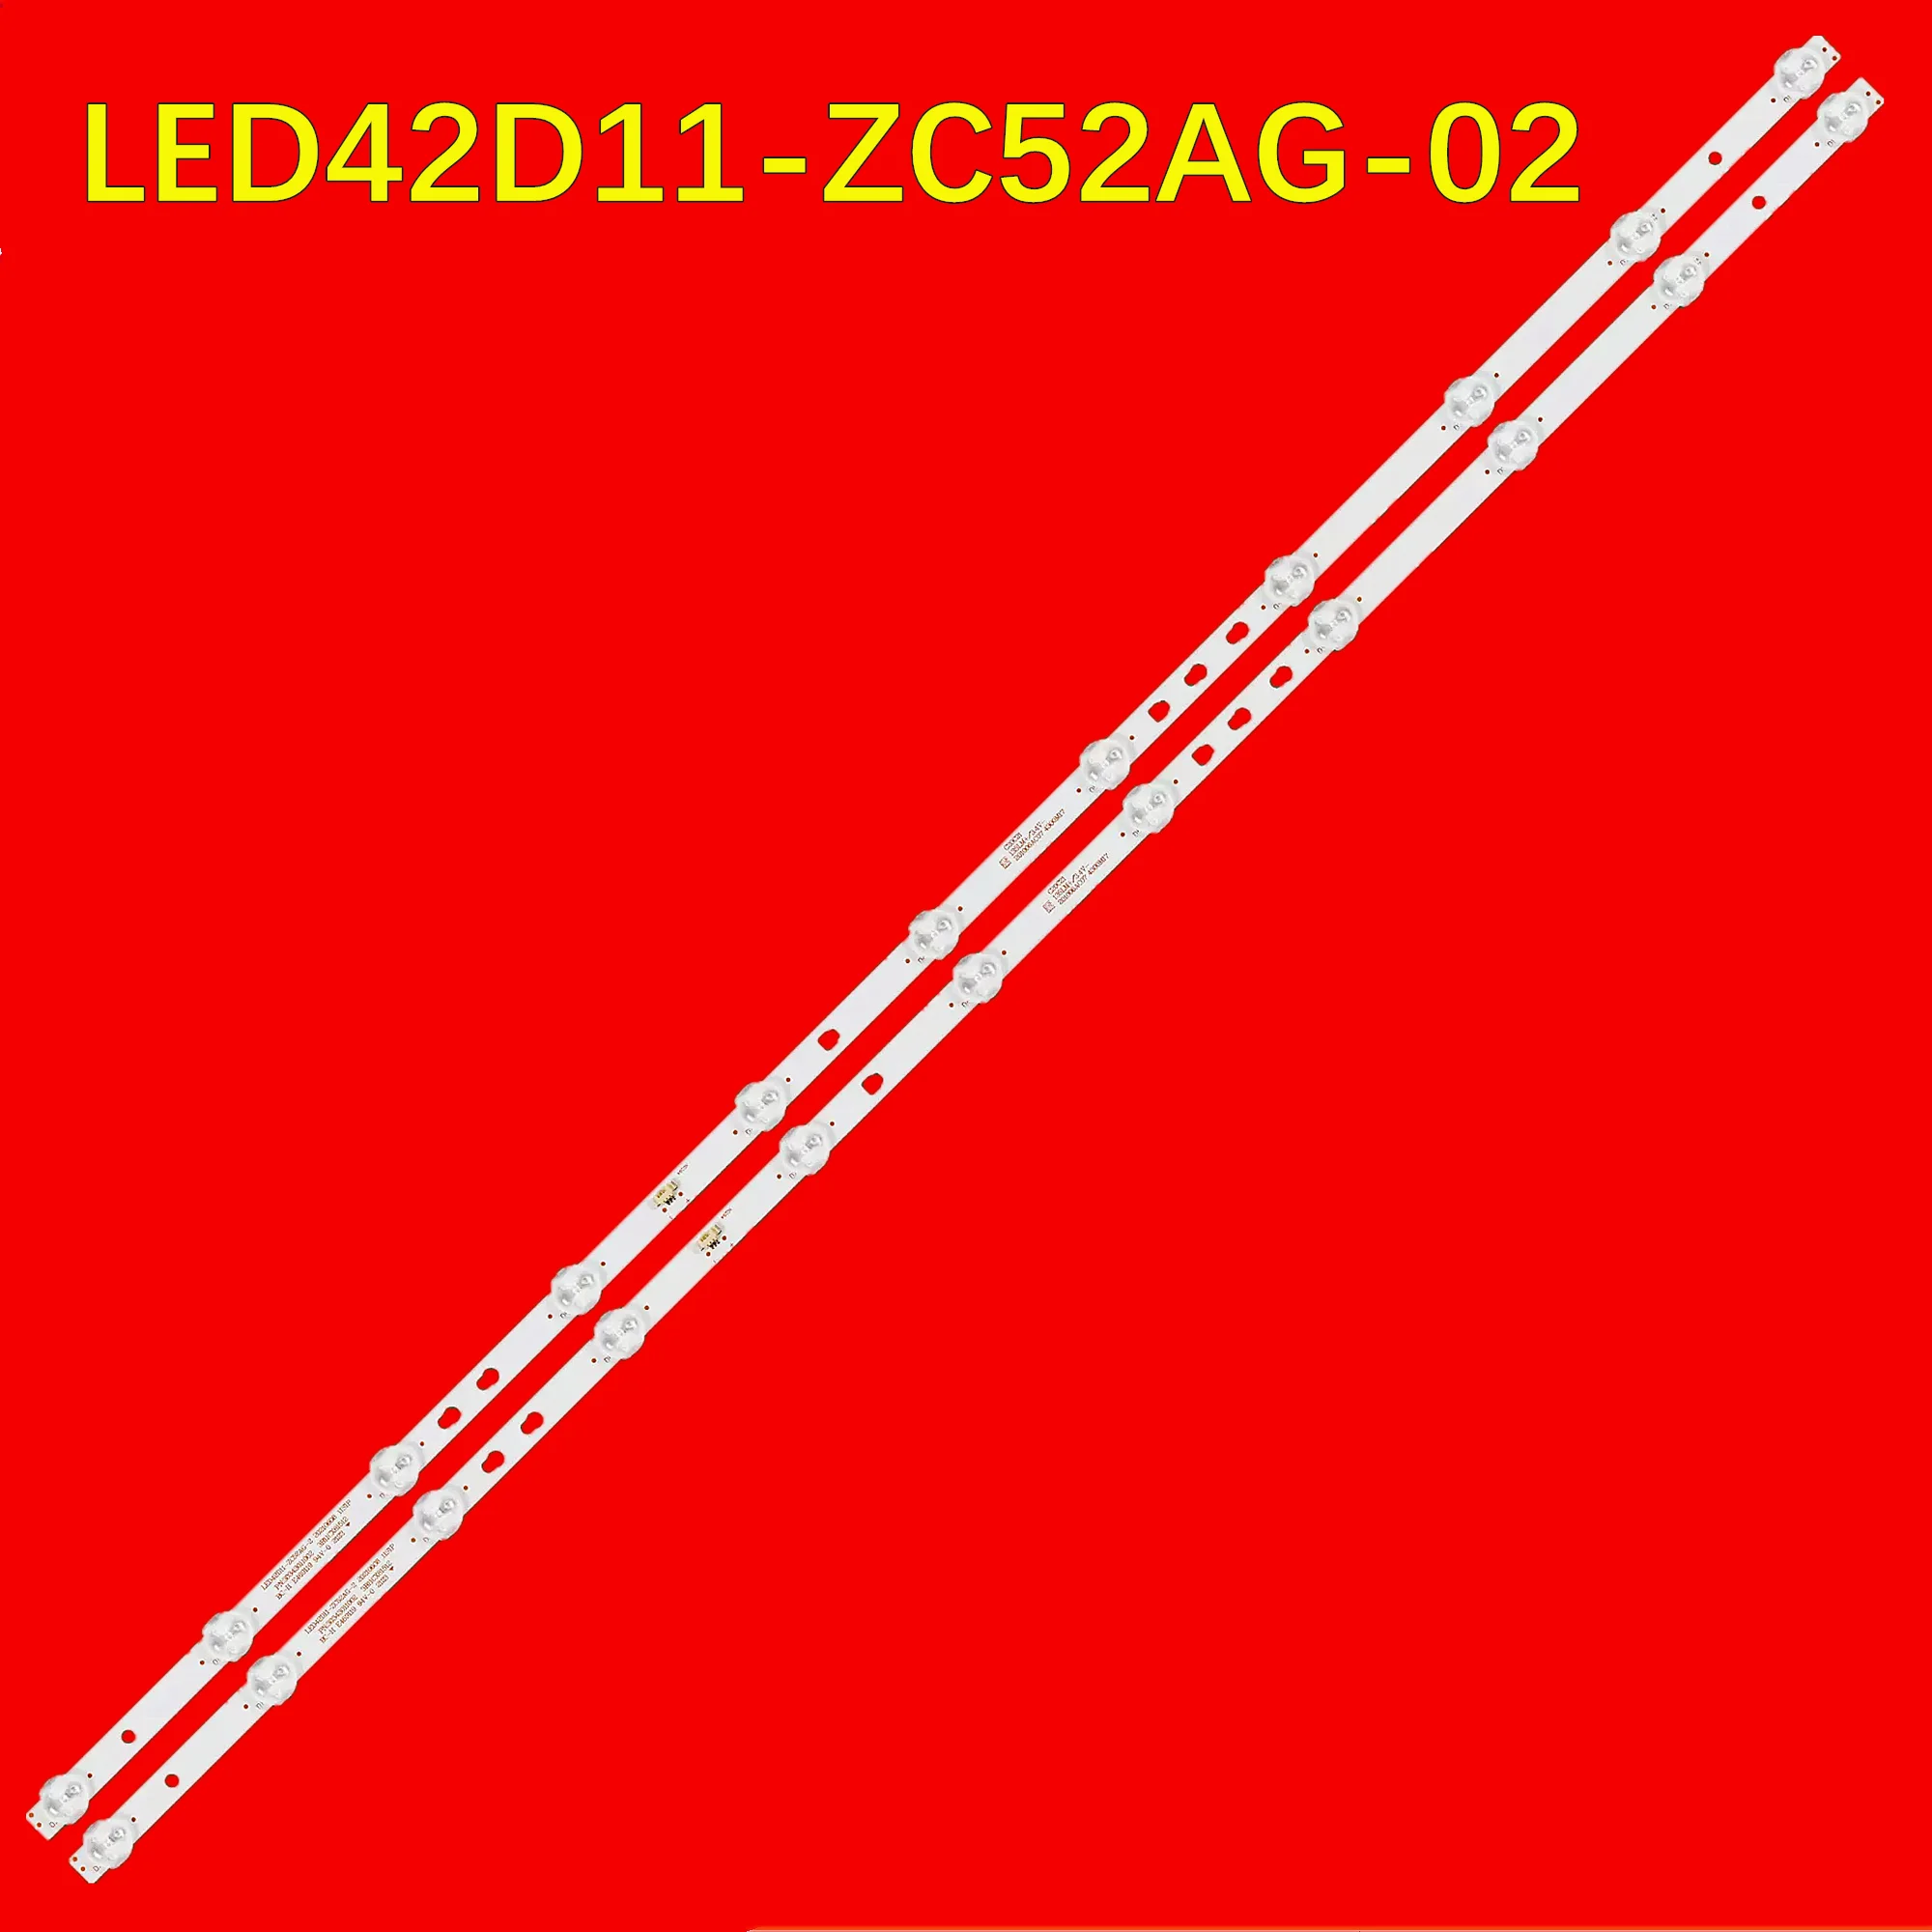 LED TV Ʈ Ʈ, 42U1, 42K31A, 42M3RA, LE43M31, LE42C31, LE42C51, H43E18, Z43G2111, 2T-C42CCMA, 2T-C42CCZA, LED42D11